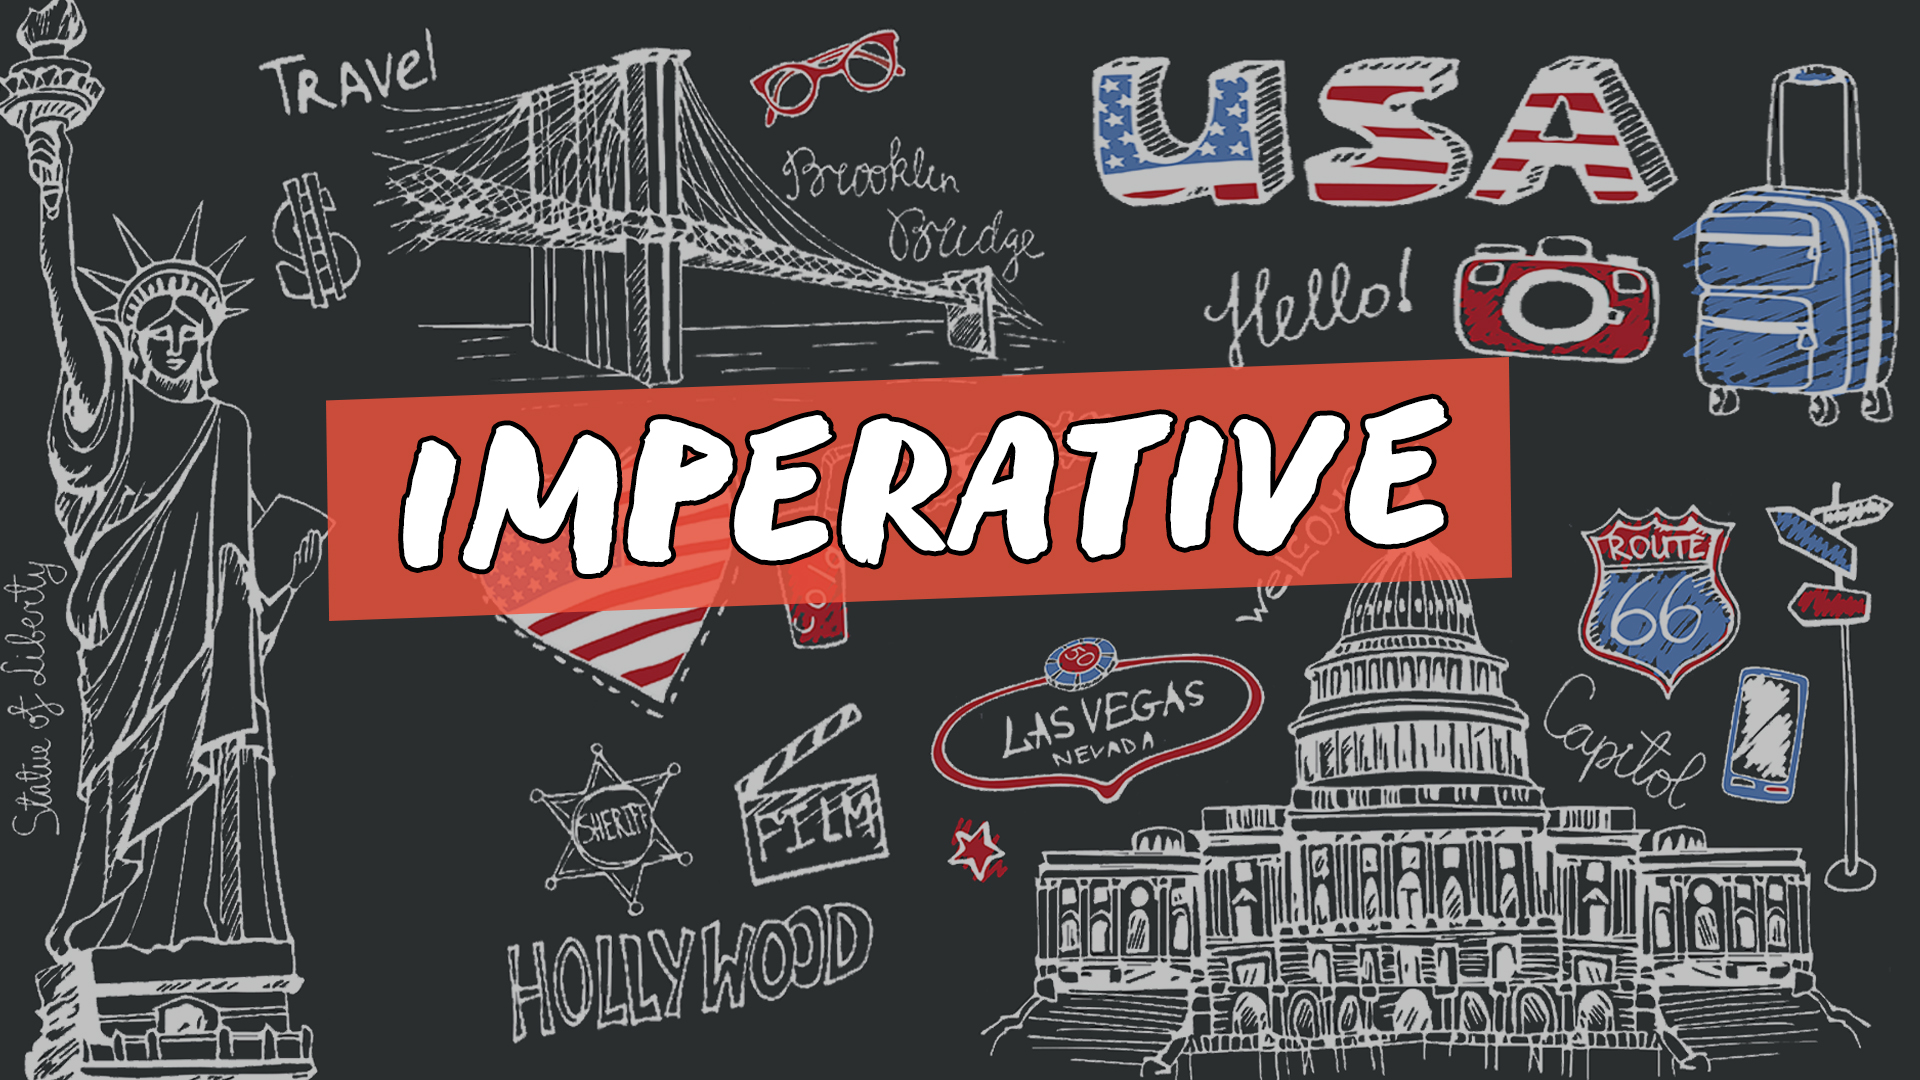 "Imperative" escrito sobre fundo com ilustração de diversos símbolos estadunidenses